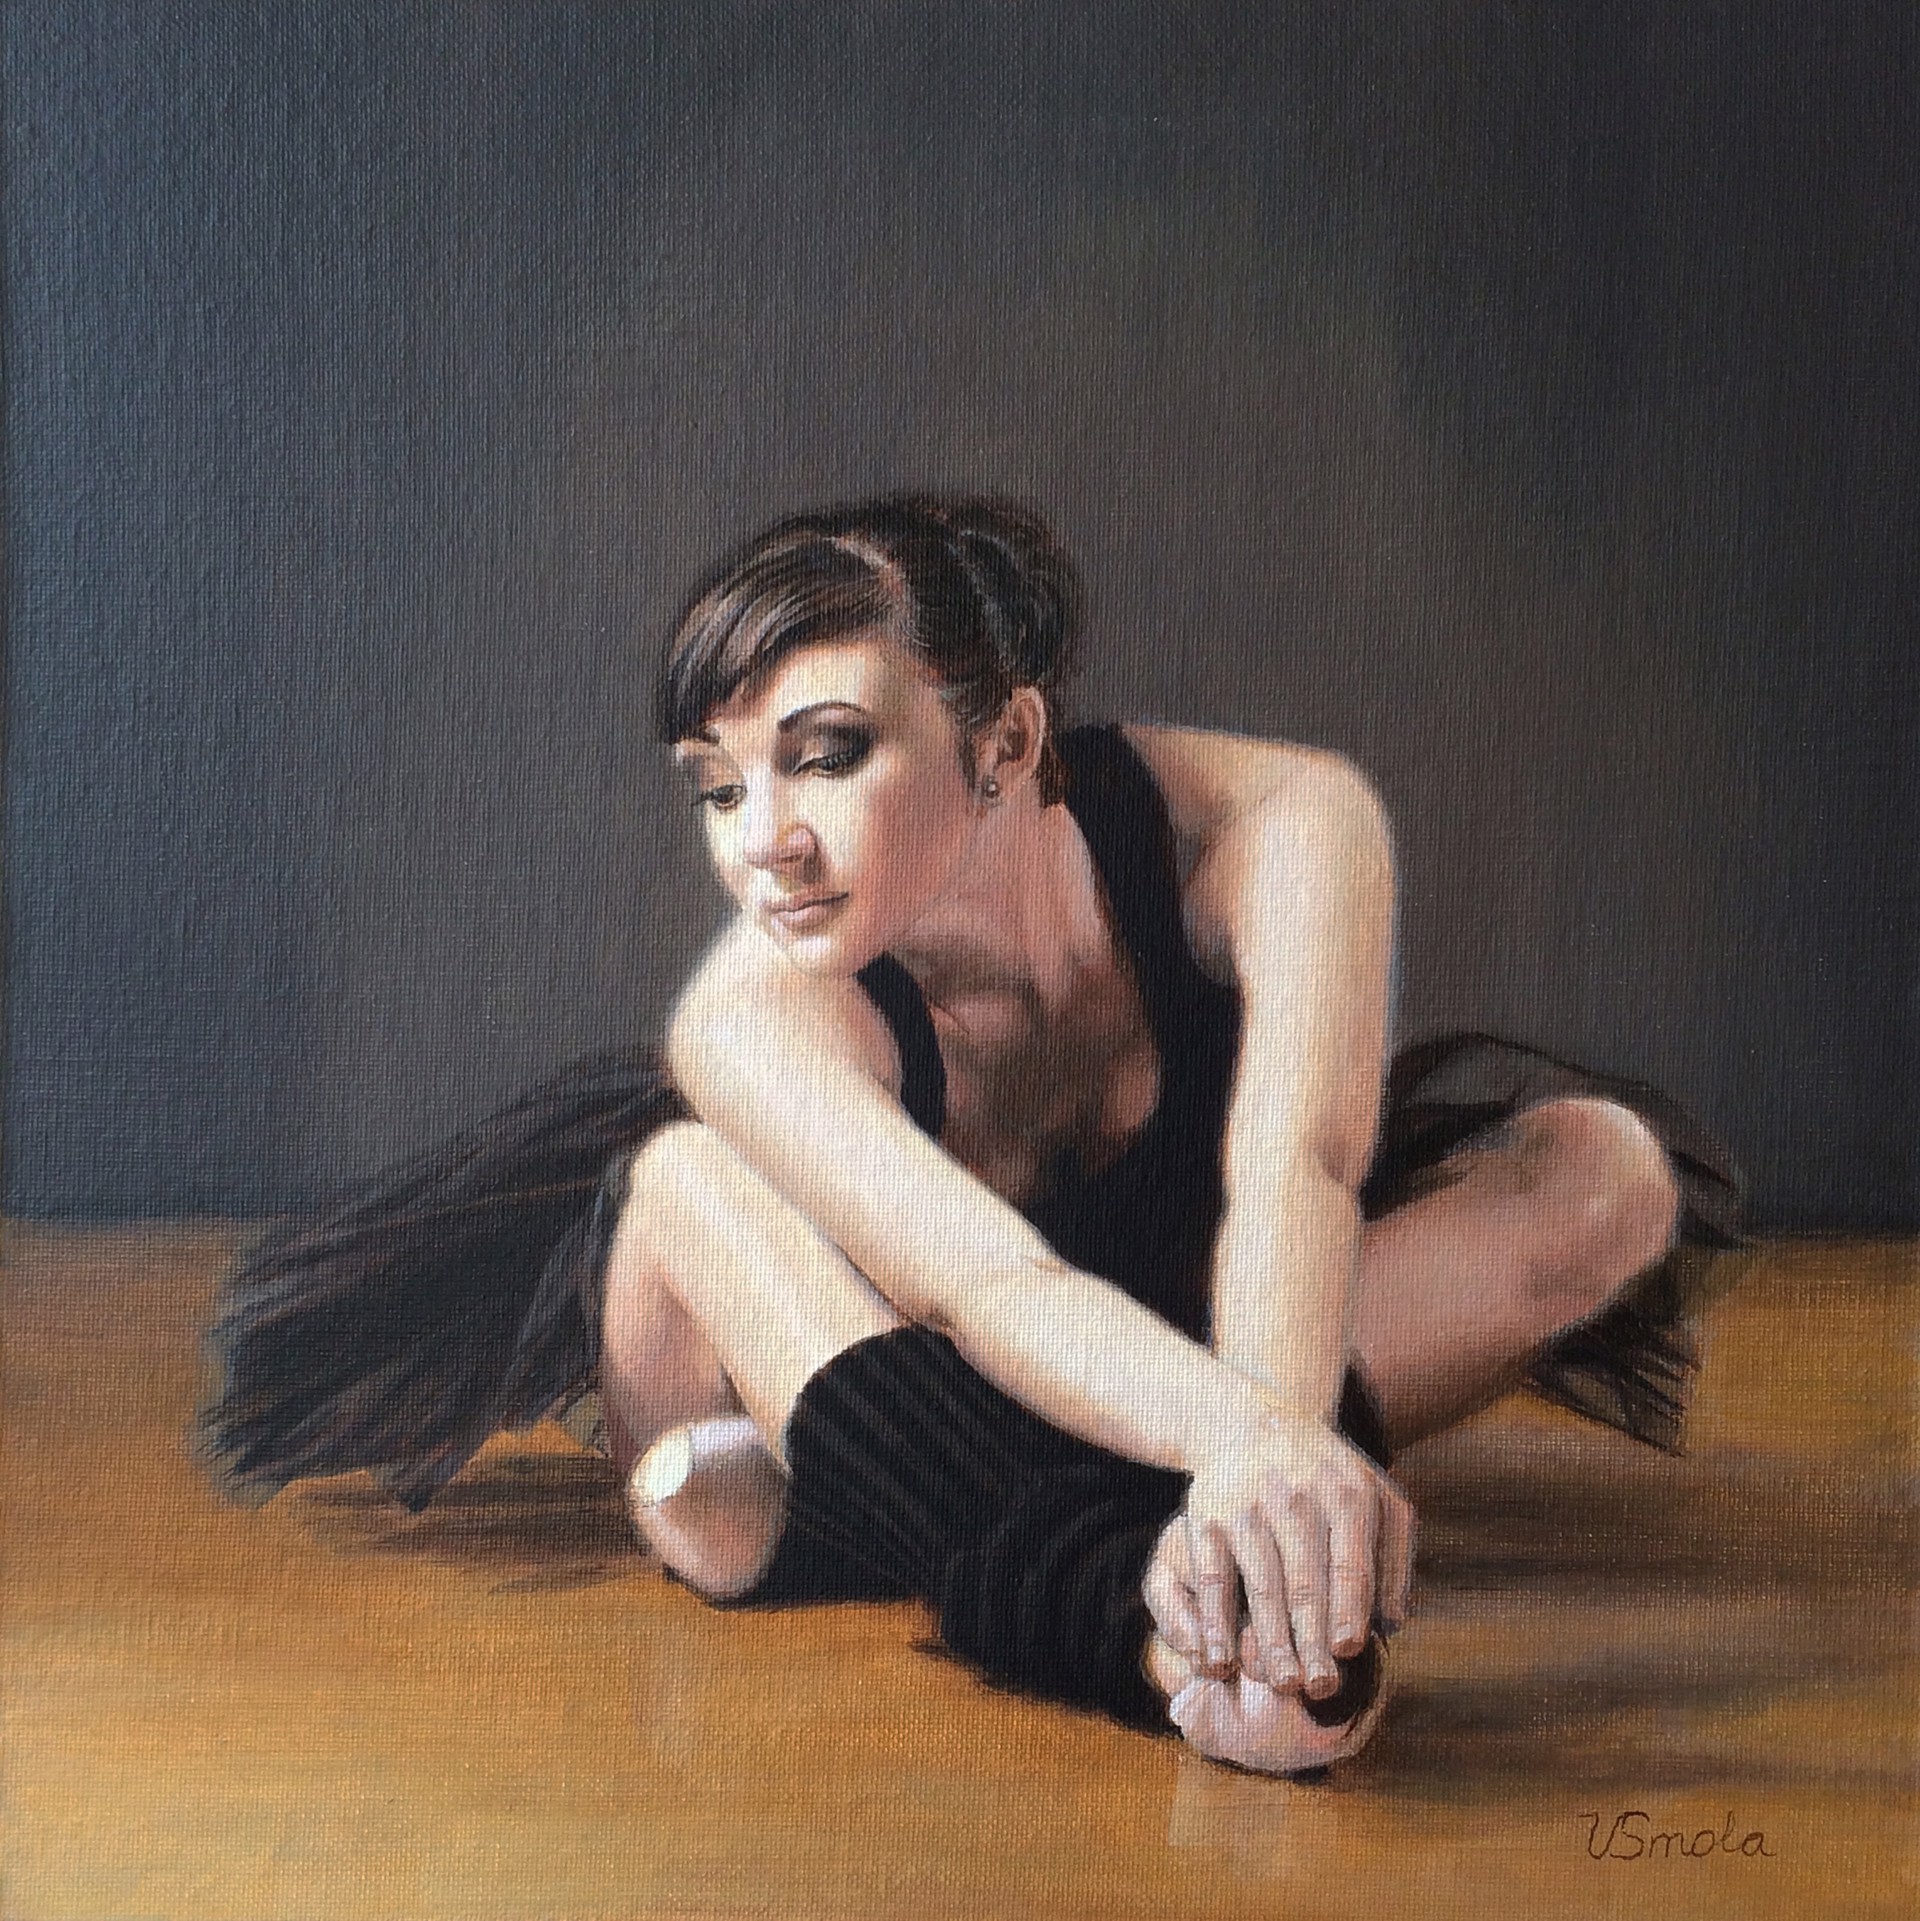 Ballerina in Black by Vlasta Smola